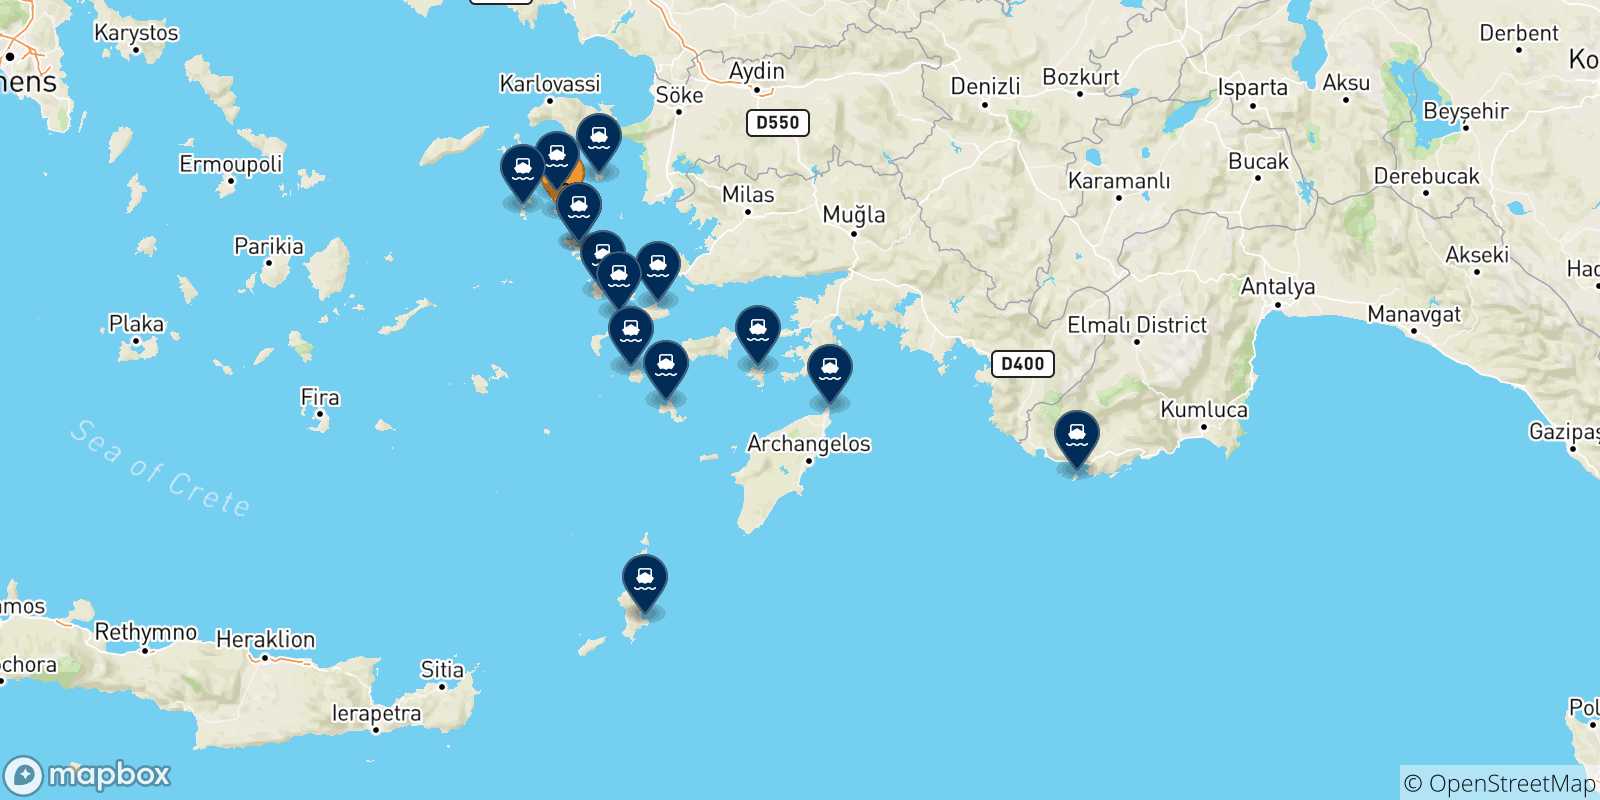 Mappa delle possibili rotte tra Lipsi e le Isole Dodecaneso